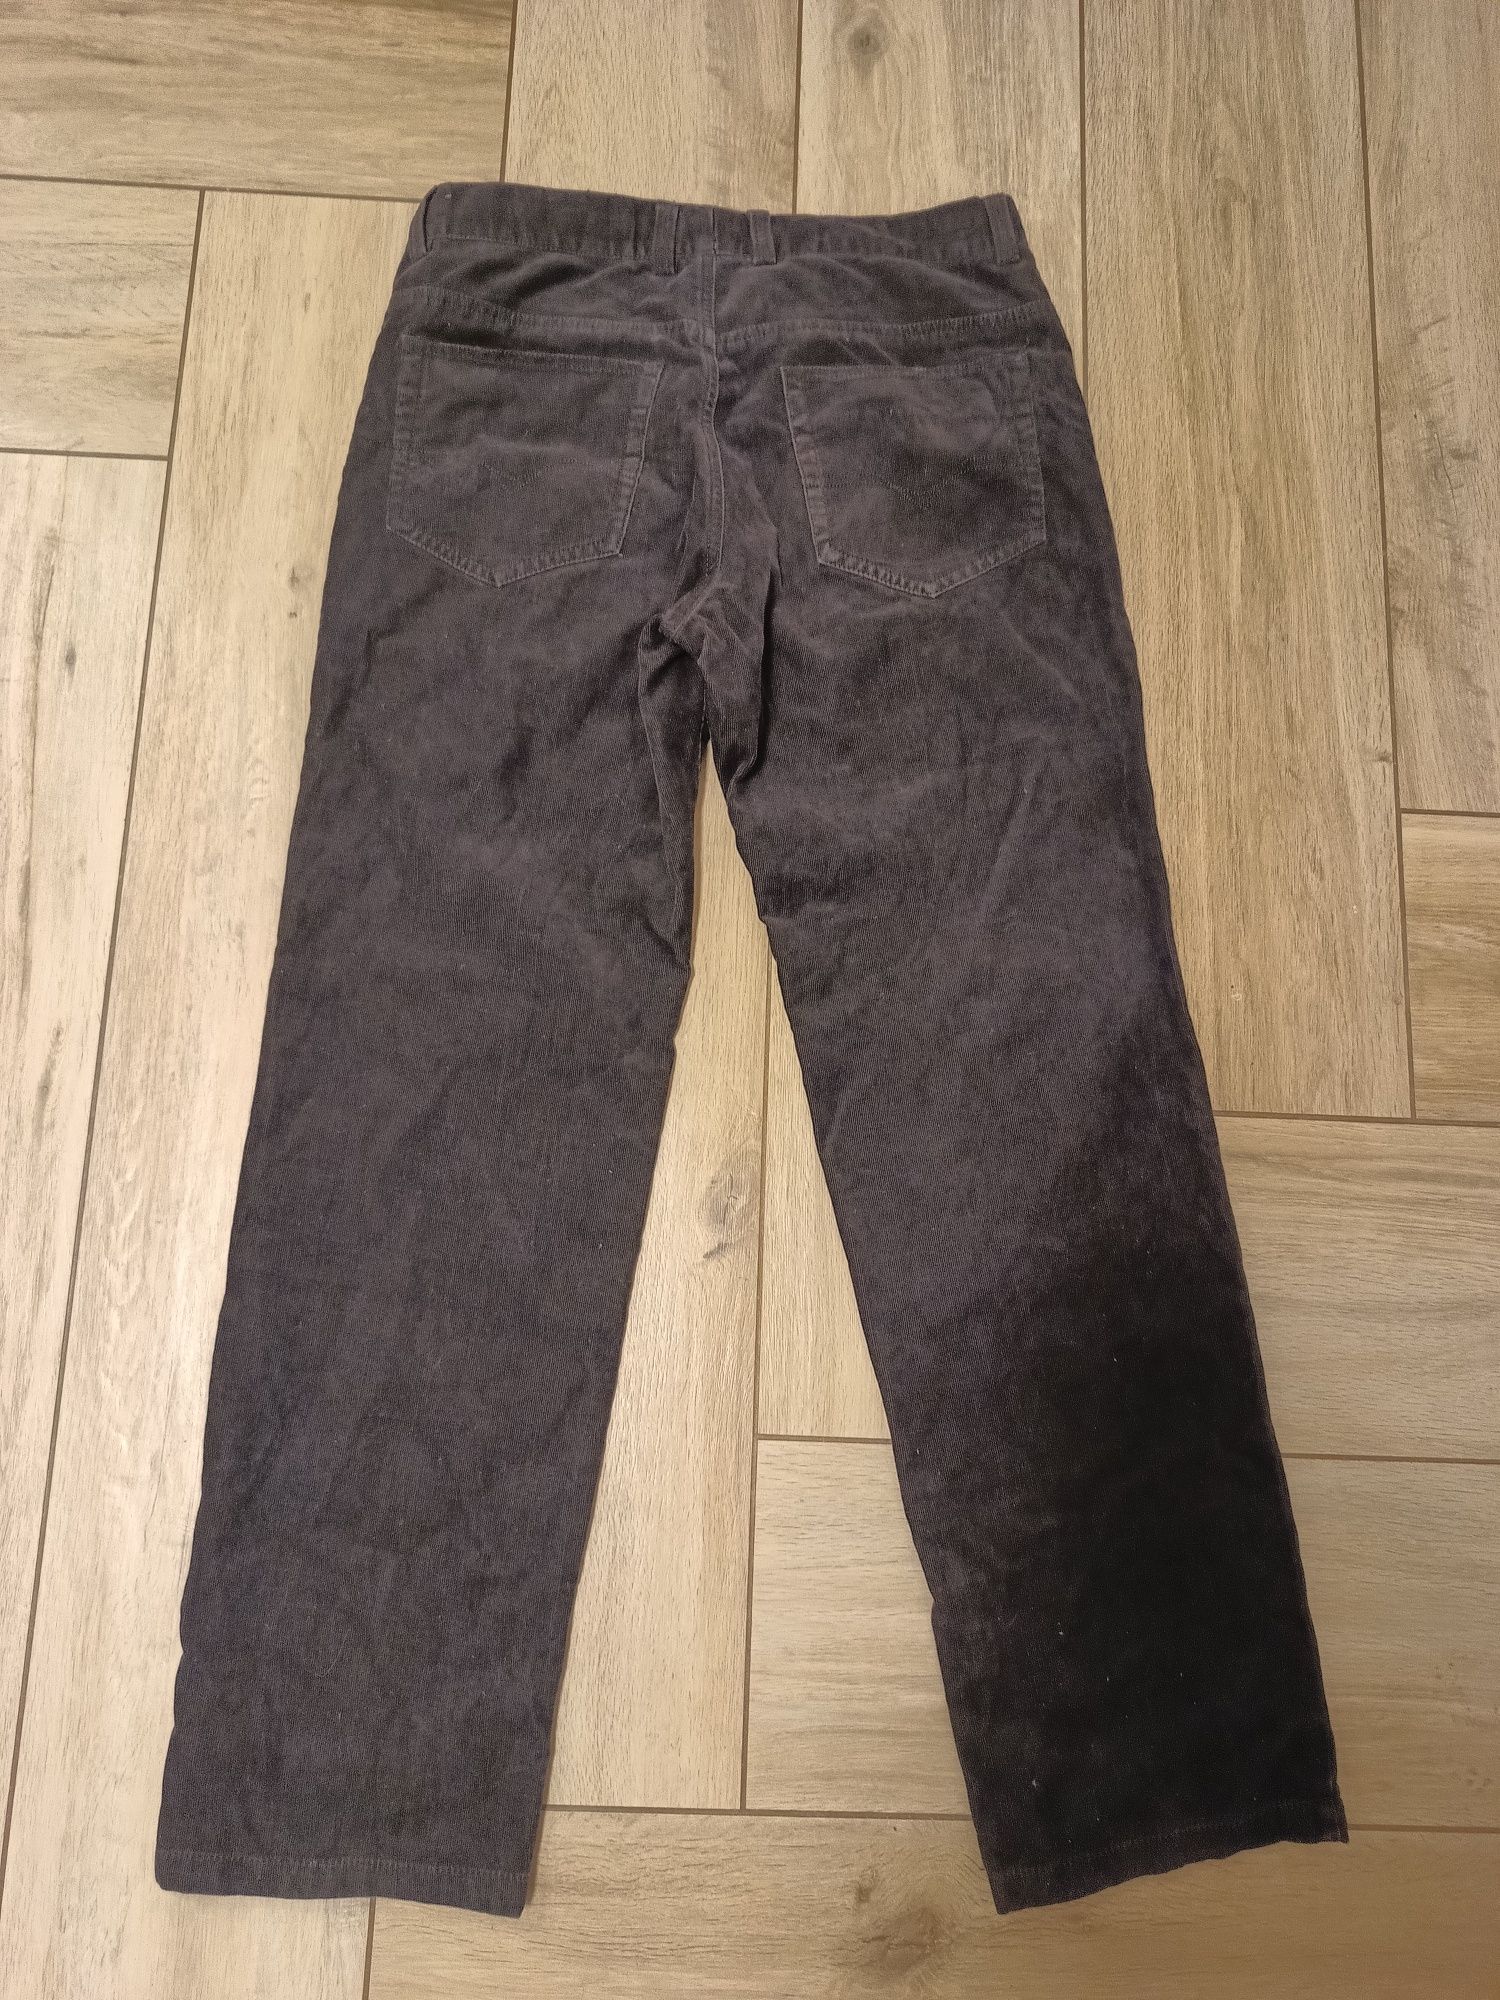 Czarne męskie sztruksowe spodnie 32/32 marki Carry